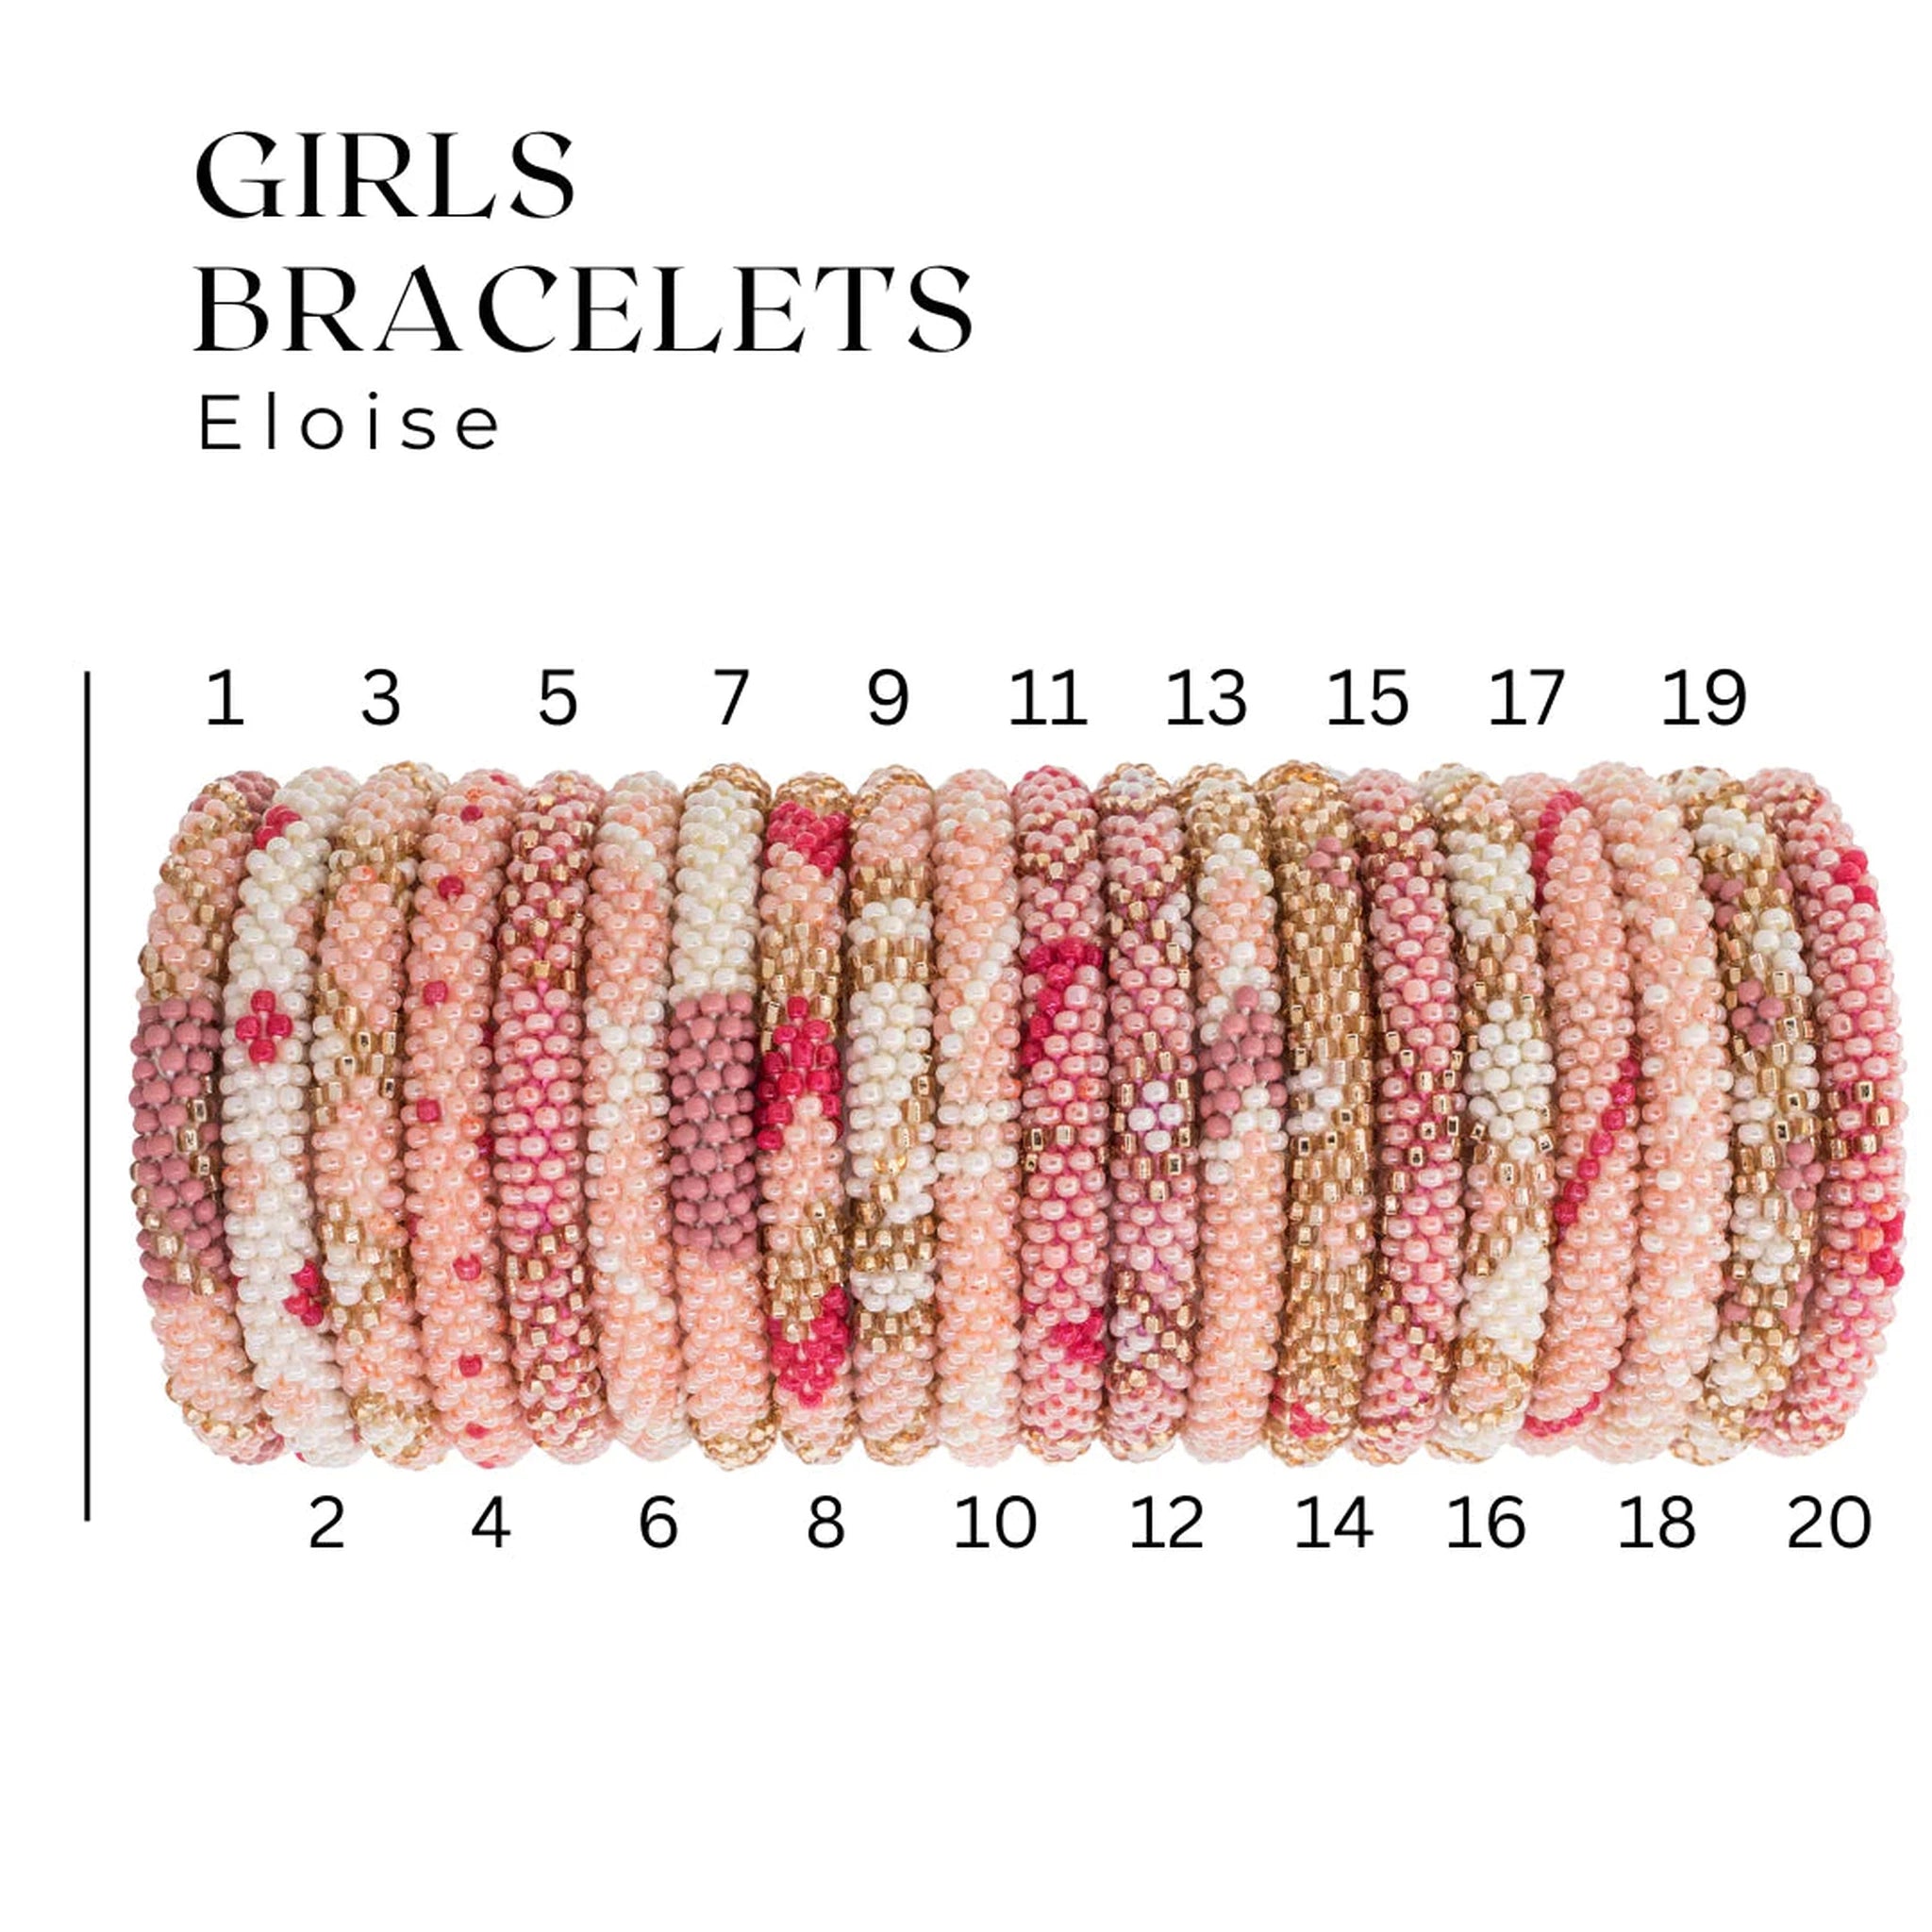 Girl Bracelets - Eloise